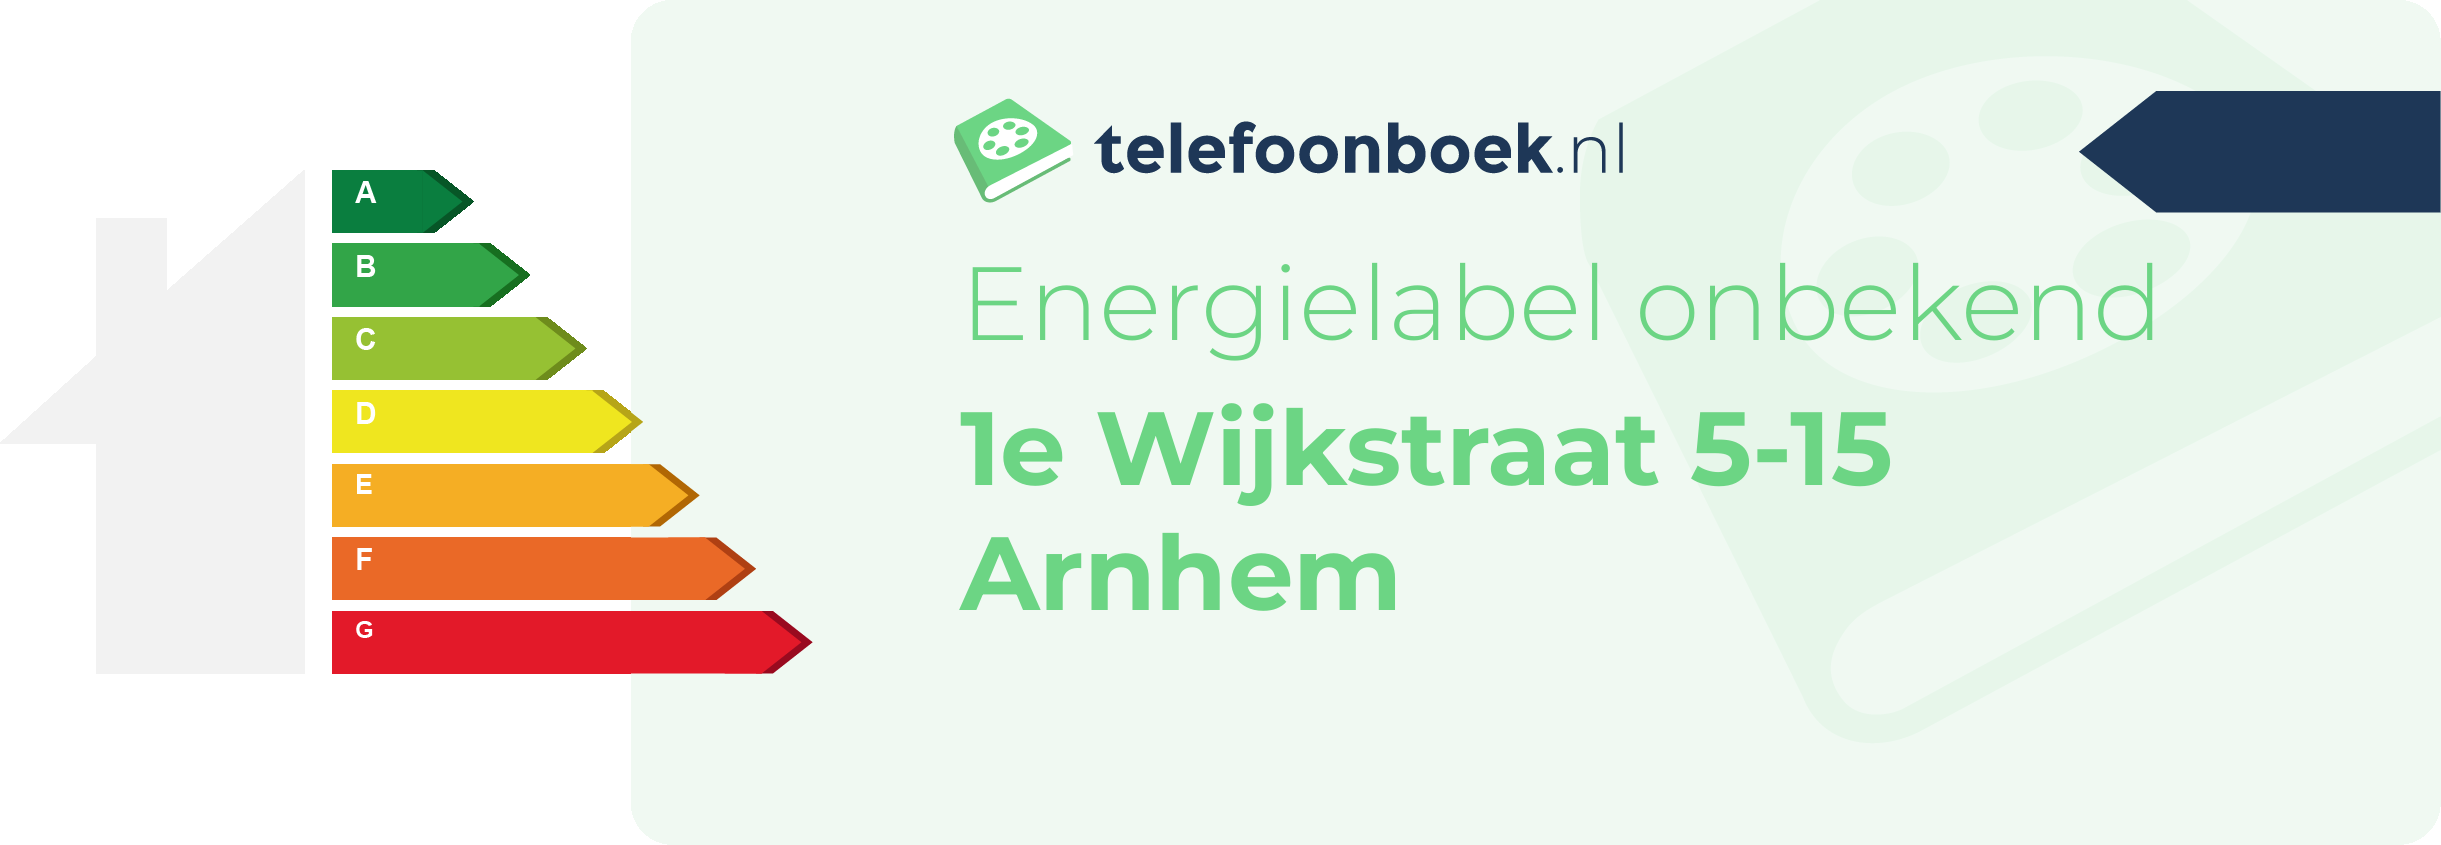 Energielabel 1e Wijkstraat 5-15 Arnhem